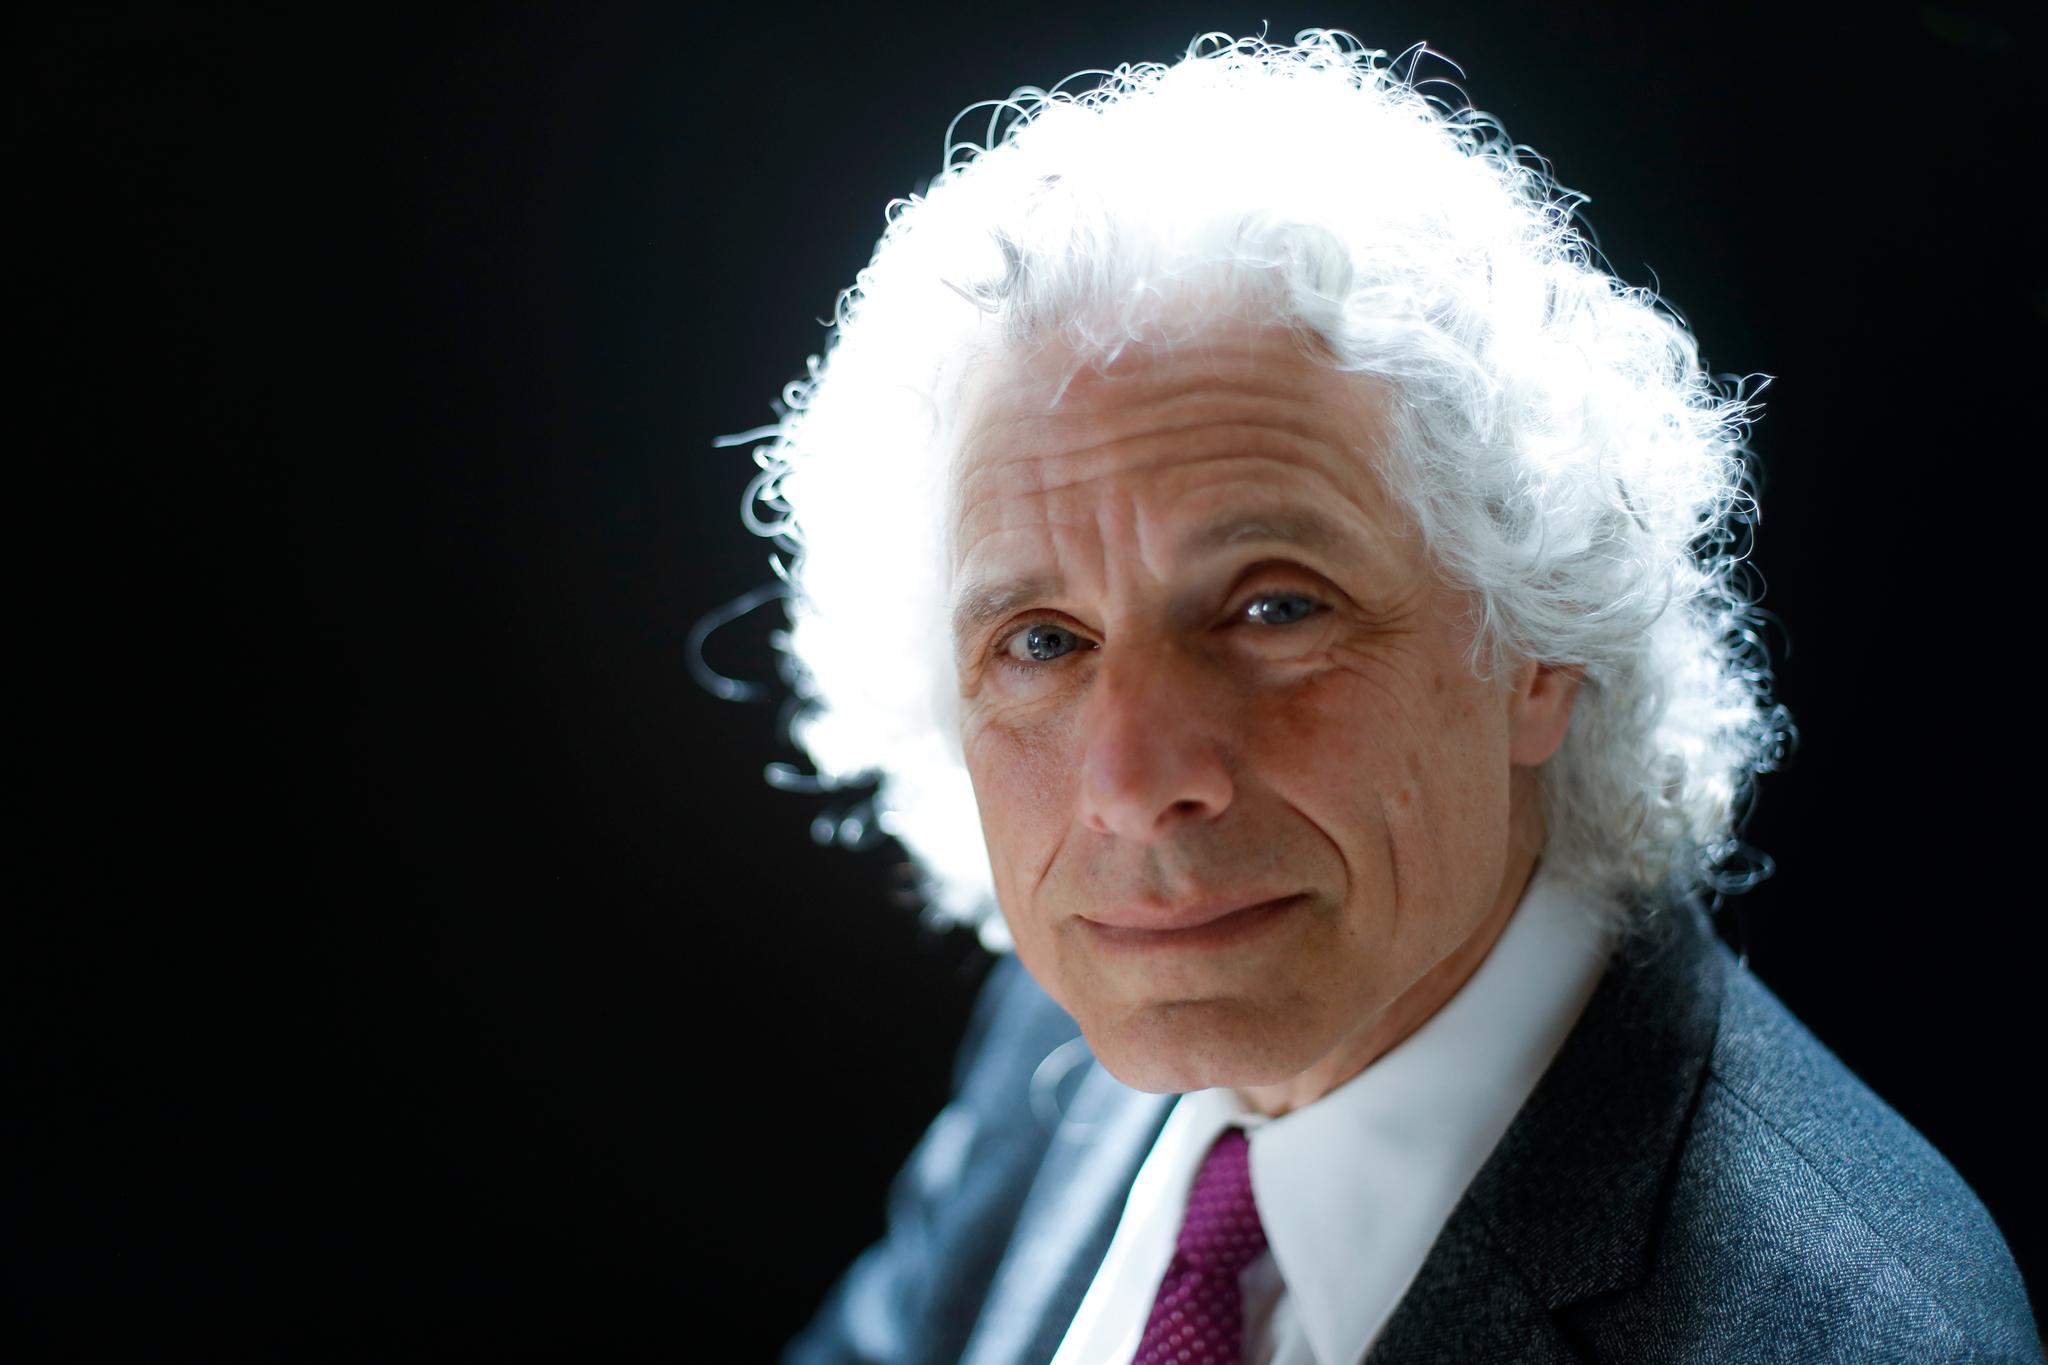 Psykolog Steven Pinker gjestet nylig Skavlan, der han beklaget seg over at klimasaken er blitt ideologisk, skriver Ole Jacob Madsen.